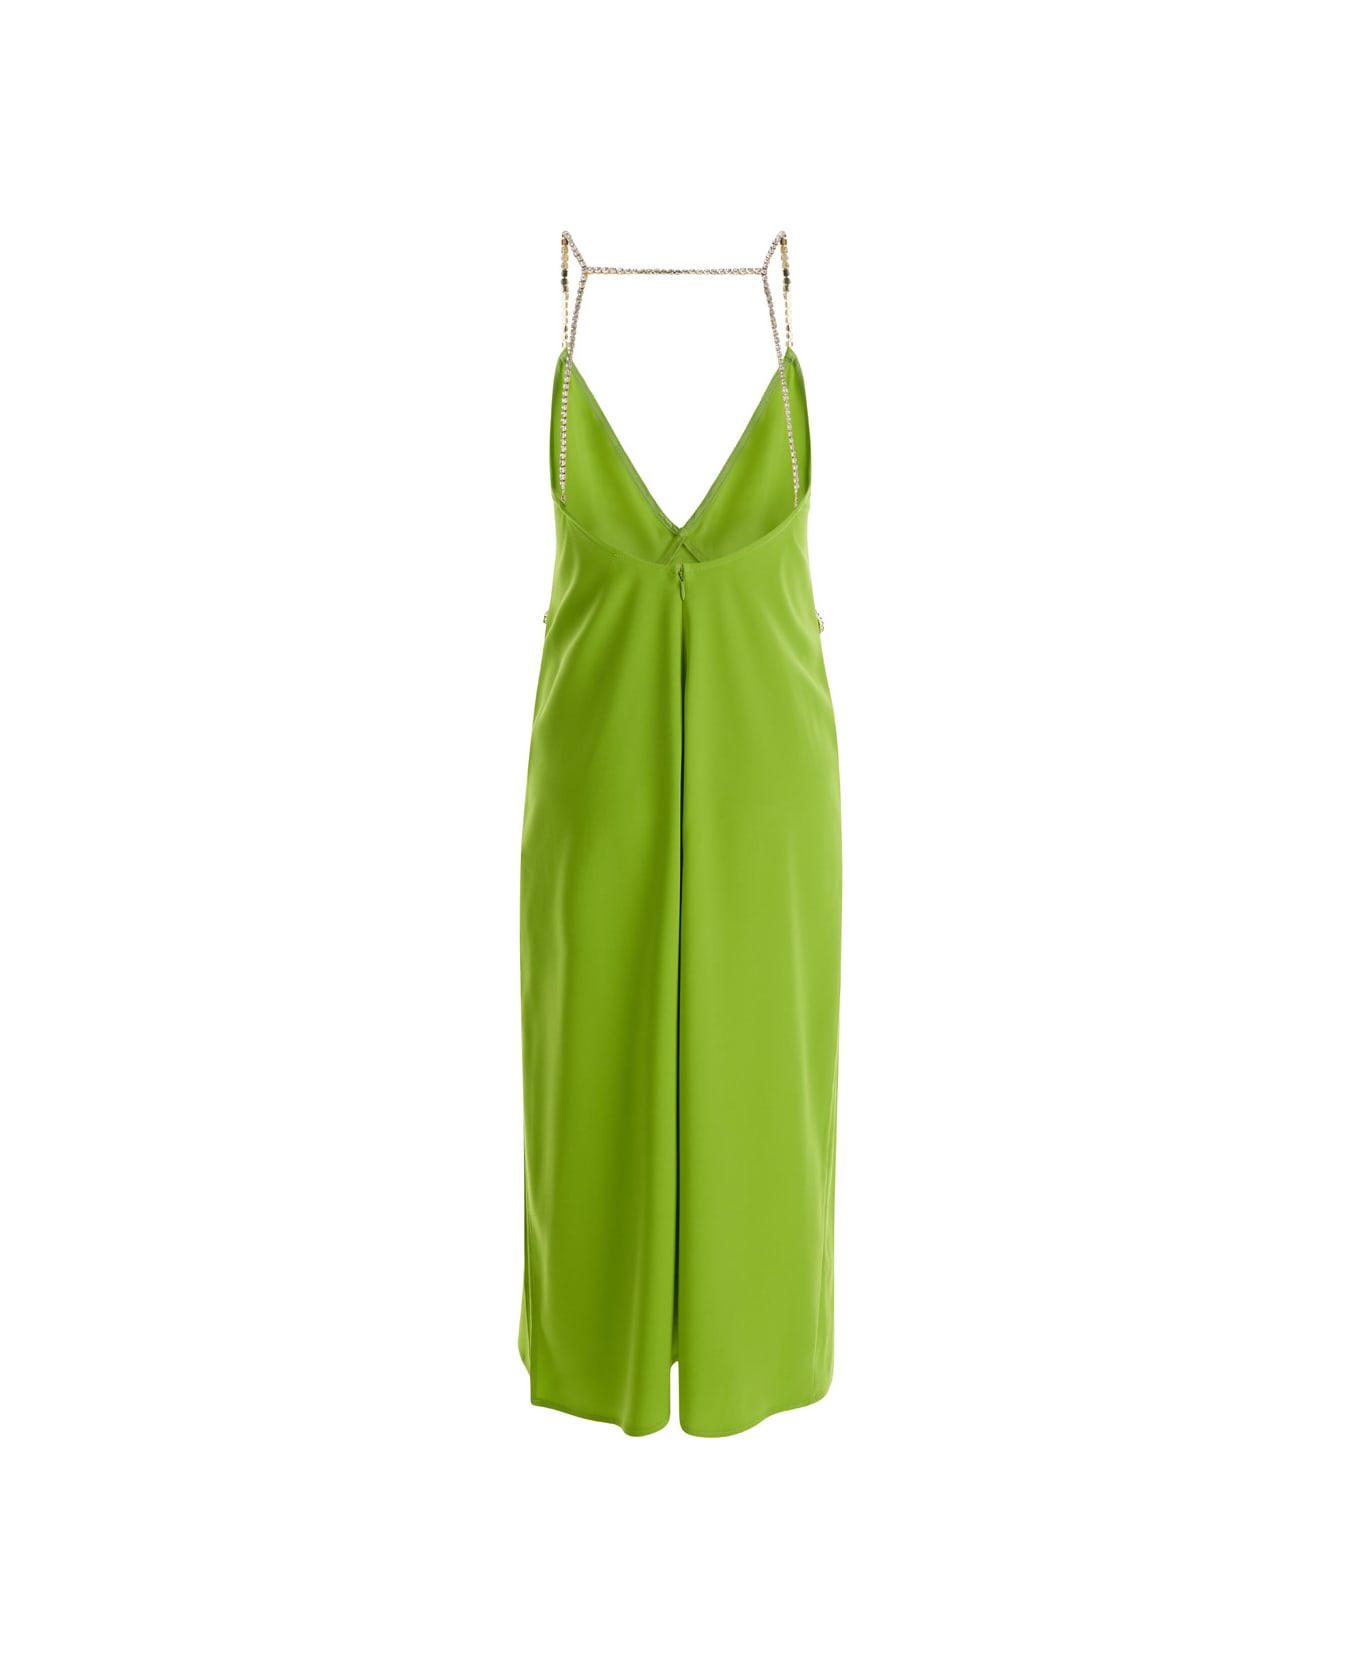 Liu-Jo Avocado Green Midi Dress With Rhinestone Straps In Crepe Fabric Woman Liu-Jo - GREEN ワンピース＆ドレス